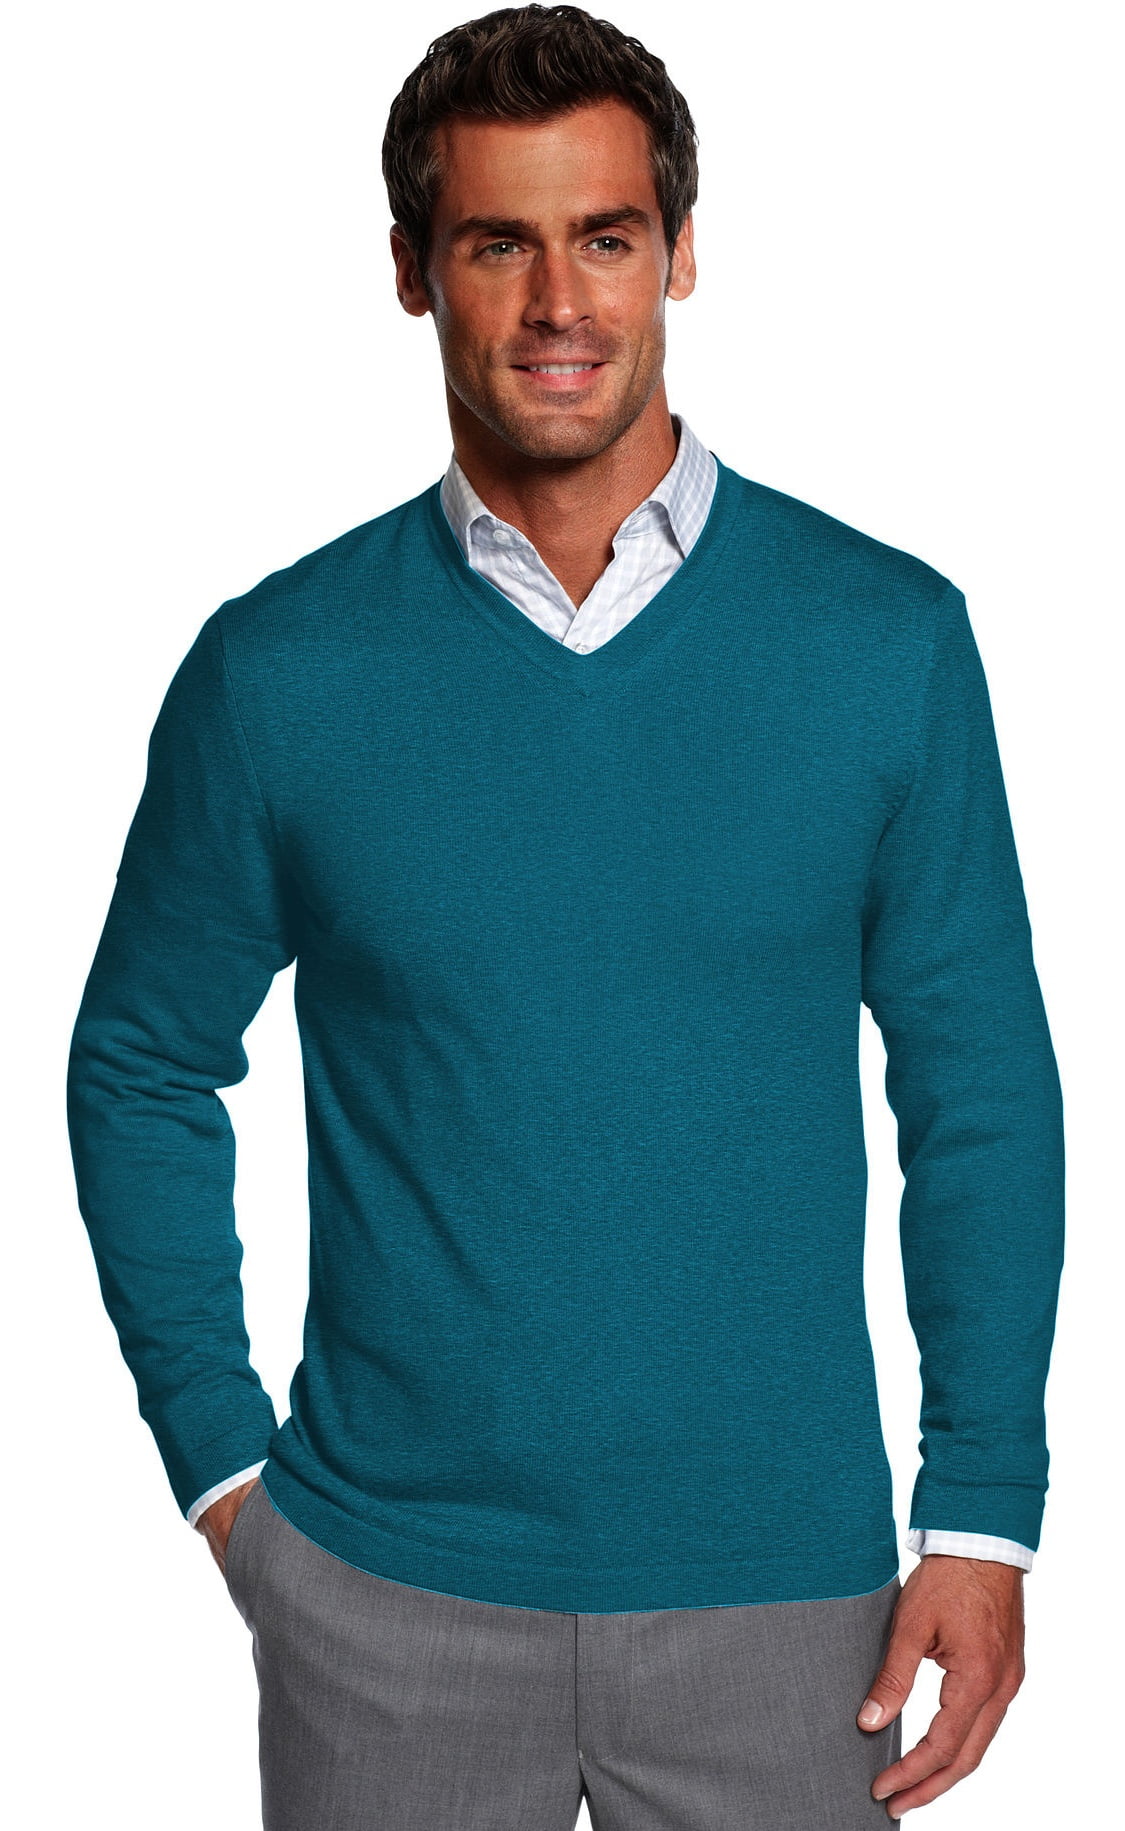 Alfani - Alfani Men's V-Neck Sweater (Small, Green) - Walmart.com ...